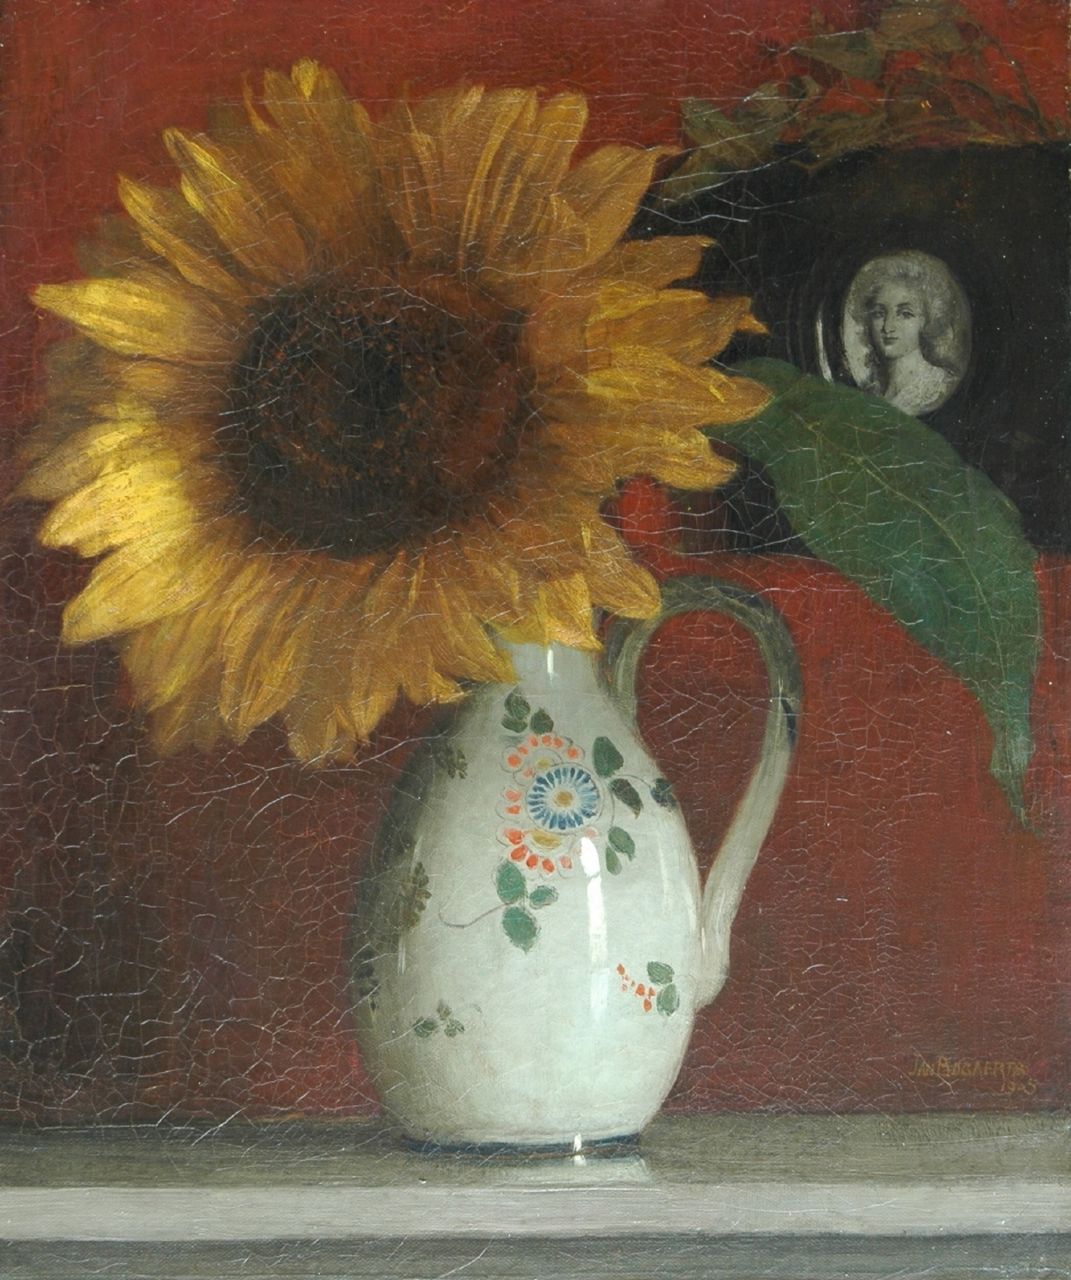 Bogaerts J.J.M.  | Johannes Jacobus Maria 'Jan' Bogaerts, Stilleven met zonnebloem, olieverf op doek 47,0 x 38,0 cm, gesigneerd rechtsonder